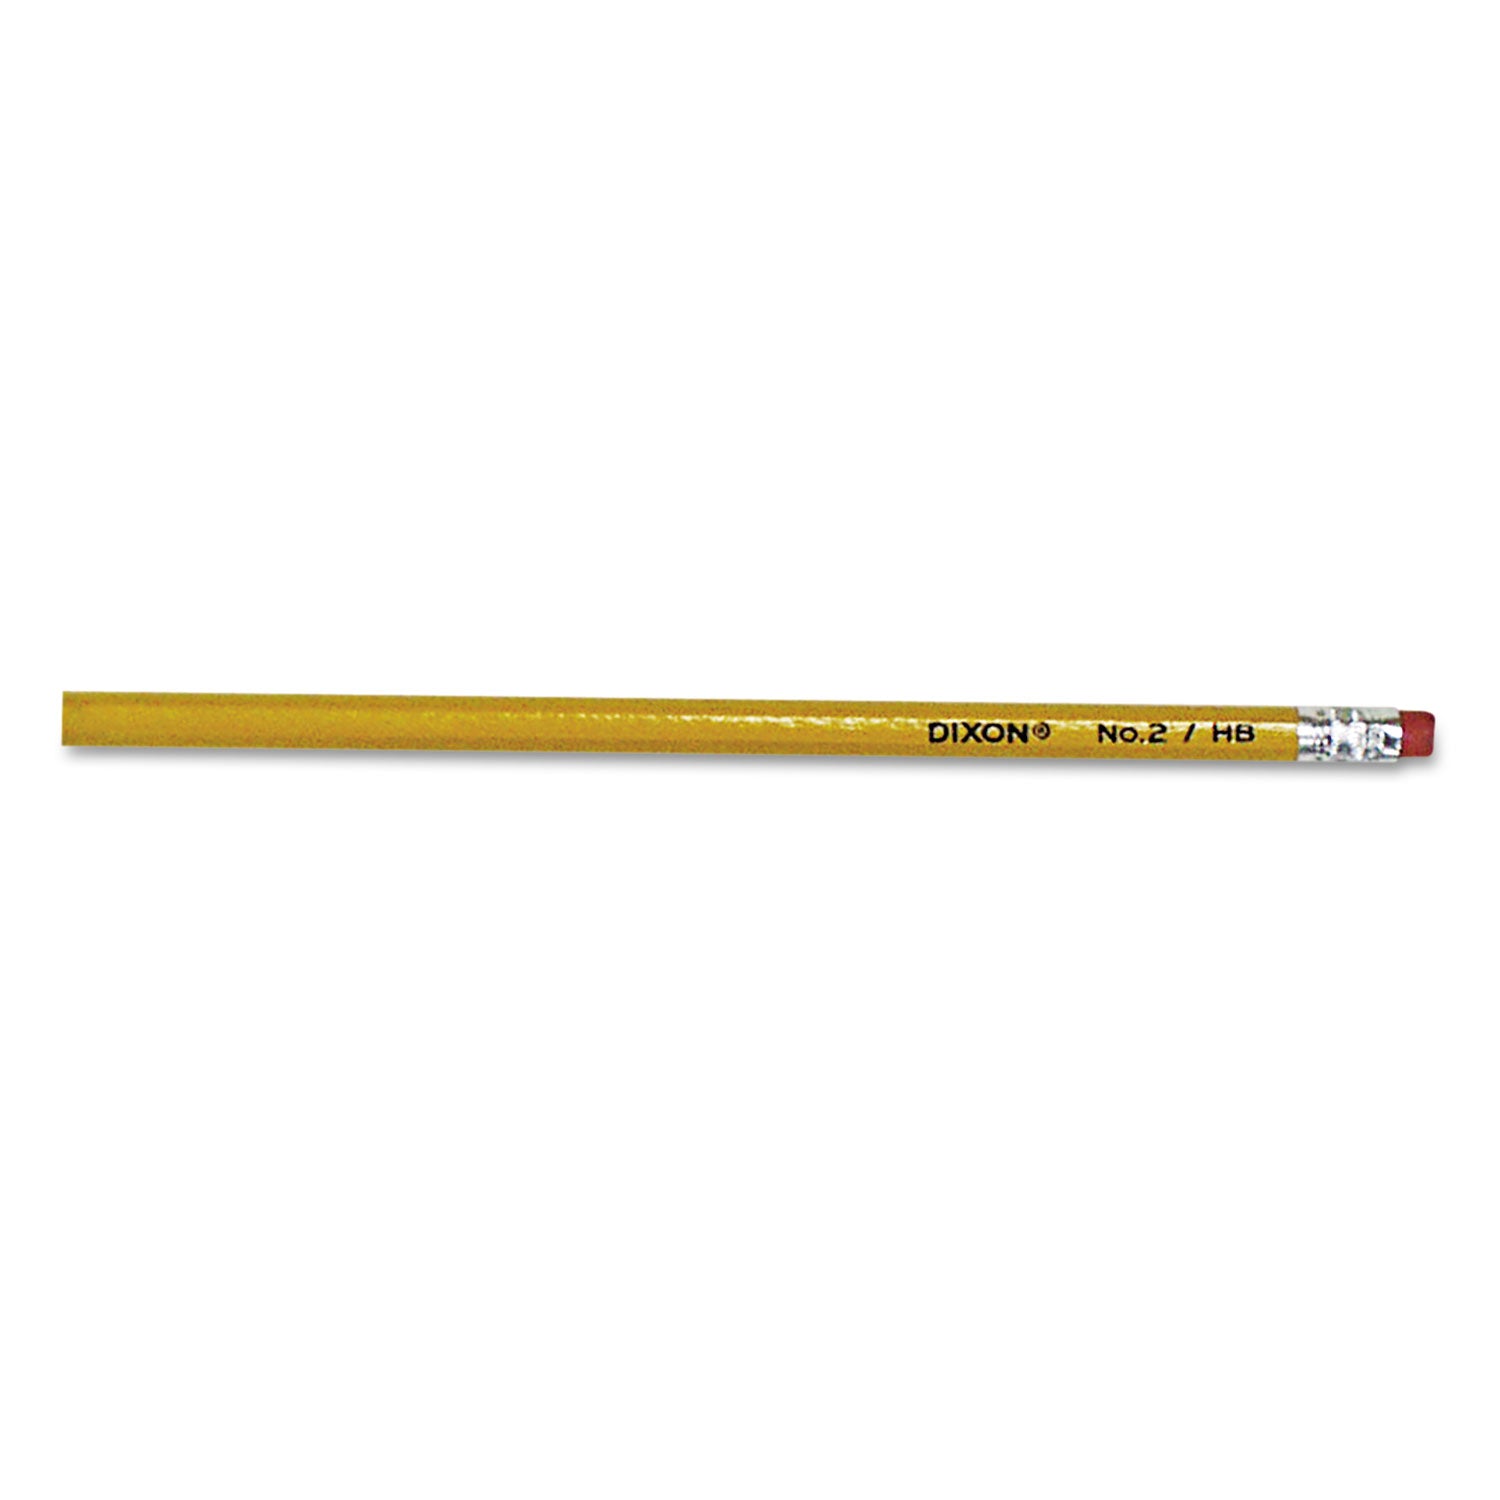 No. 2 Pencil Value Pack, HB (#2), Black Lead, Yellow Barrel, 144/Box - 